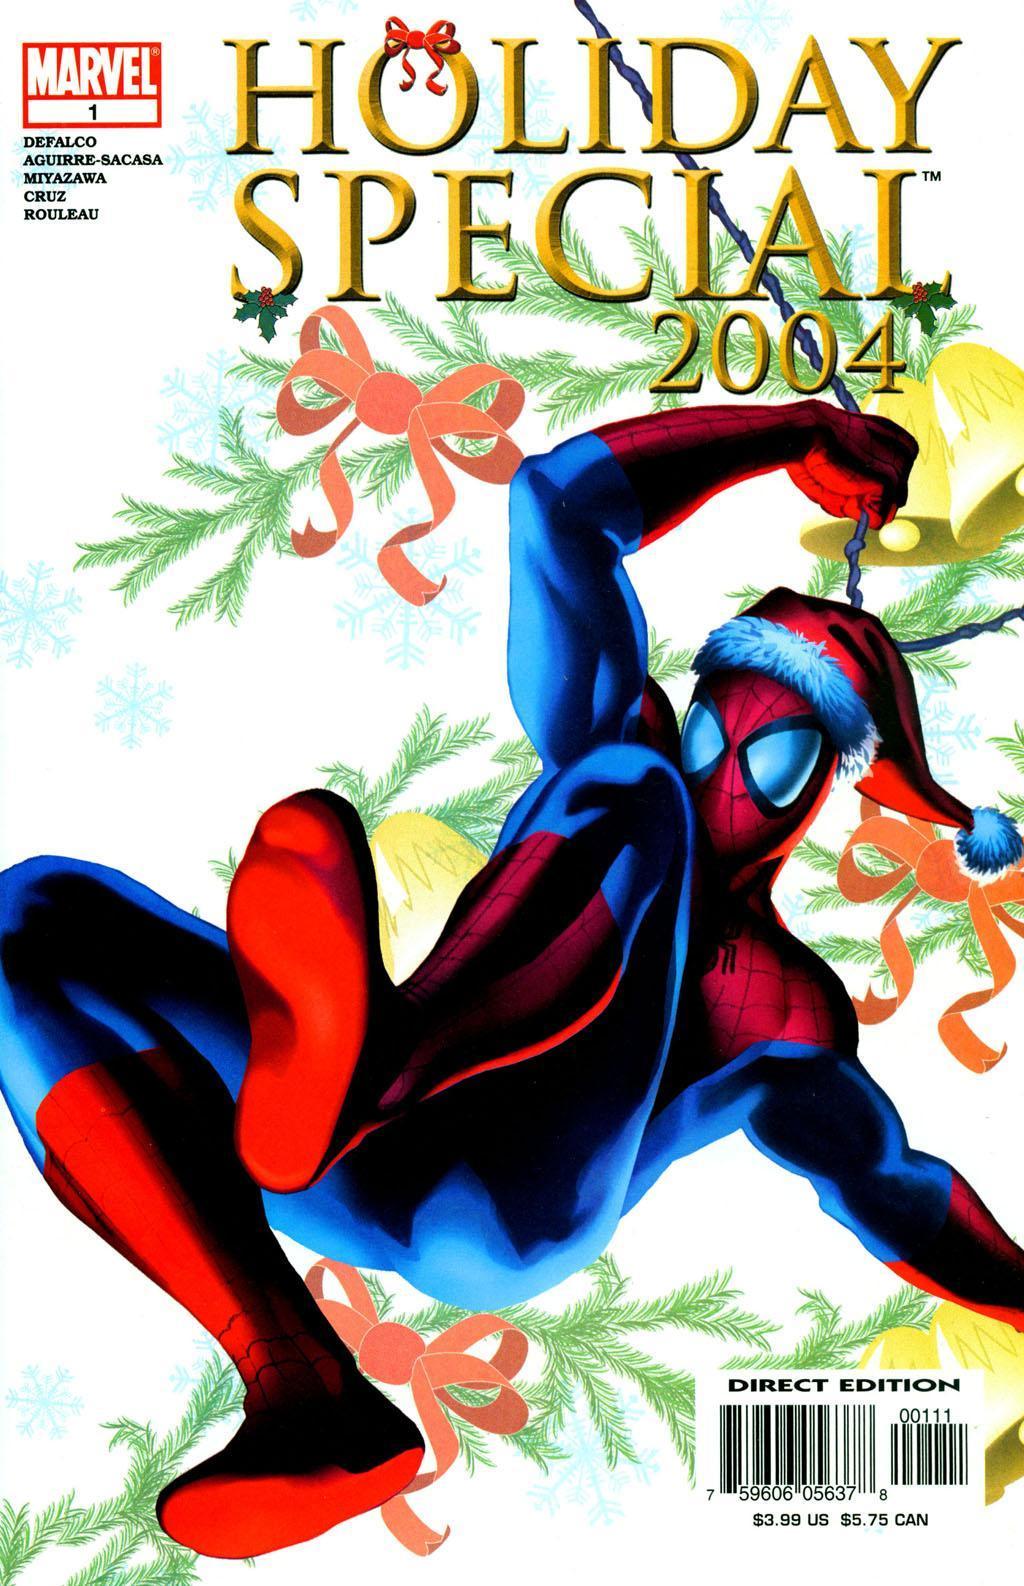 Marvel Holiday Special Vol. 1 #2004